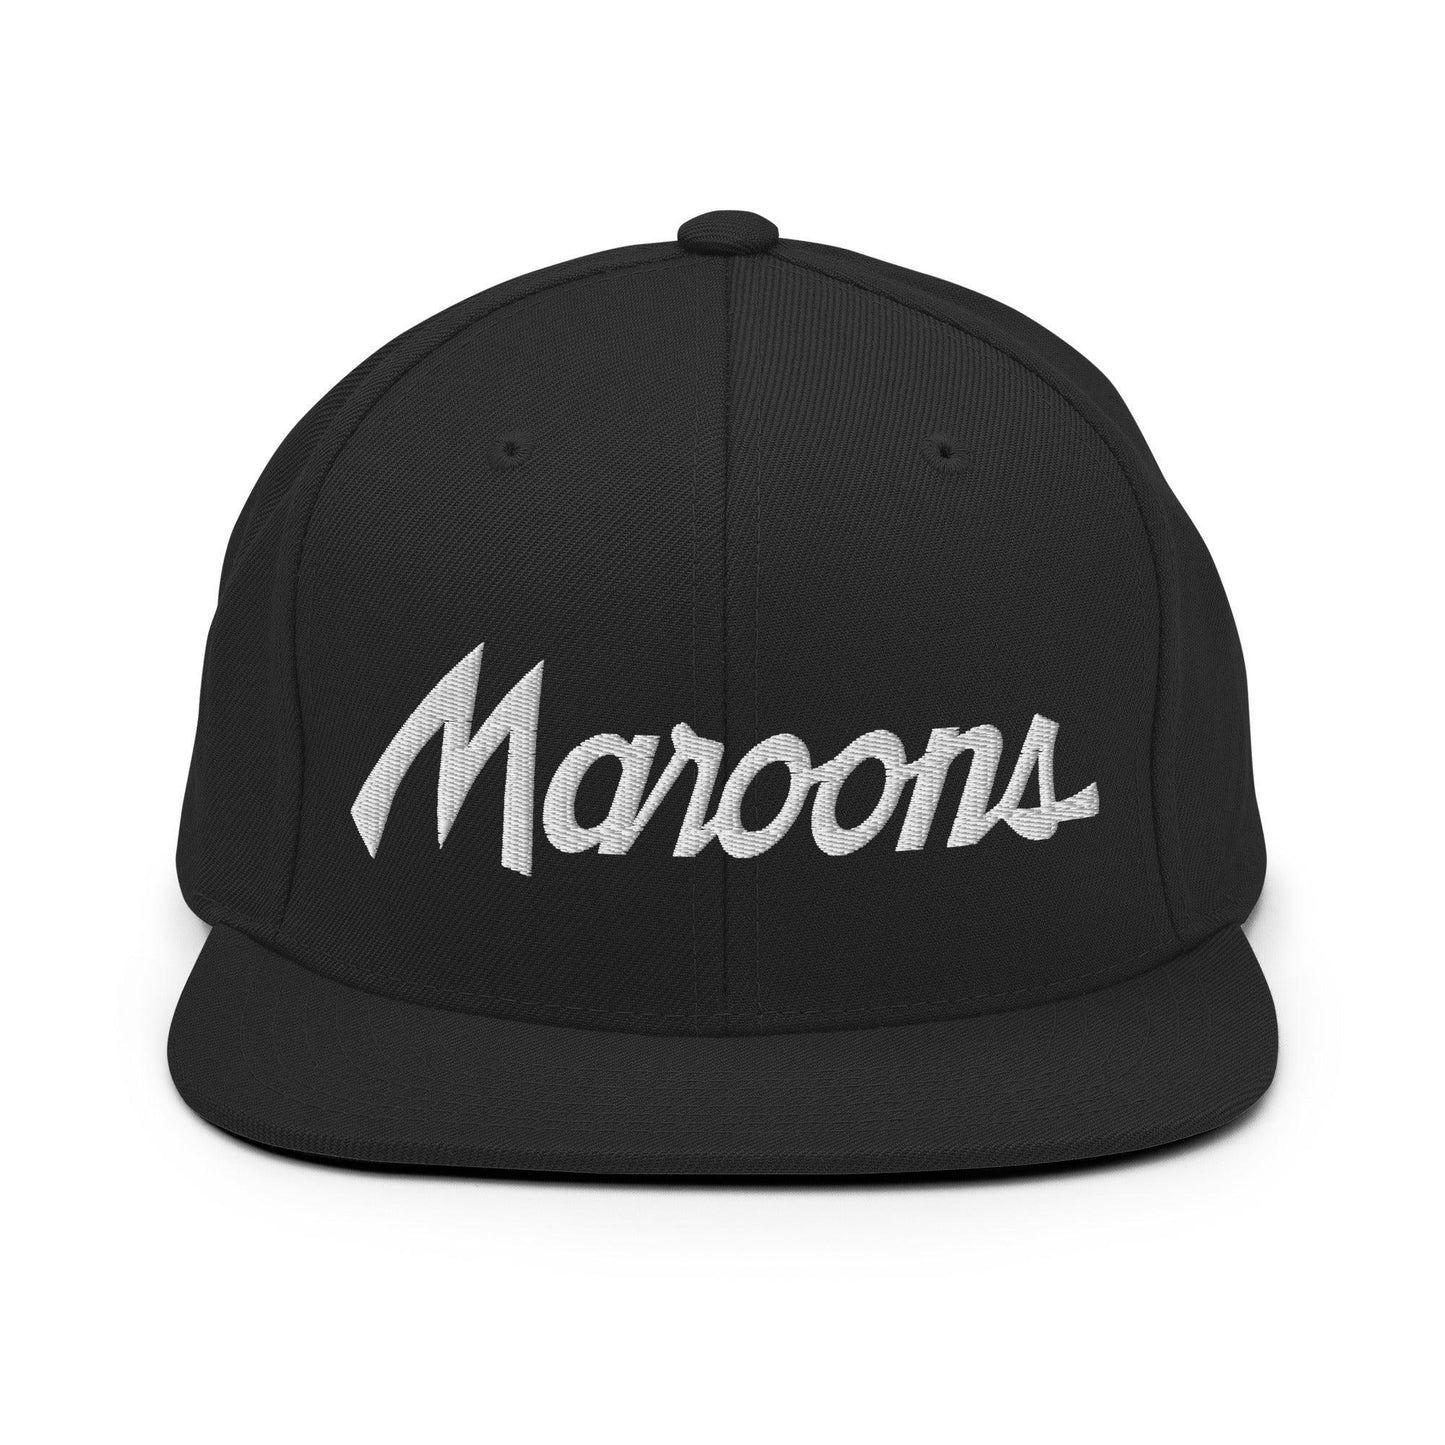 Maroons School Mascot Script Snapback Hat Black